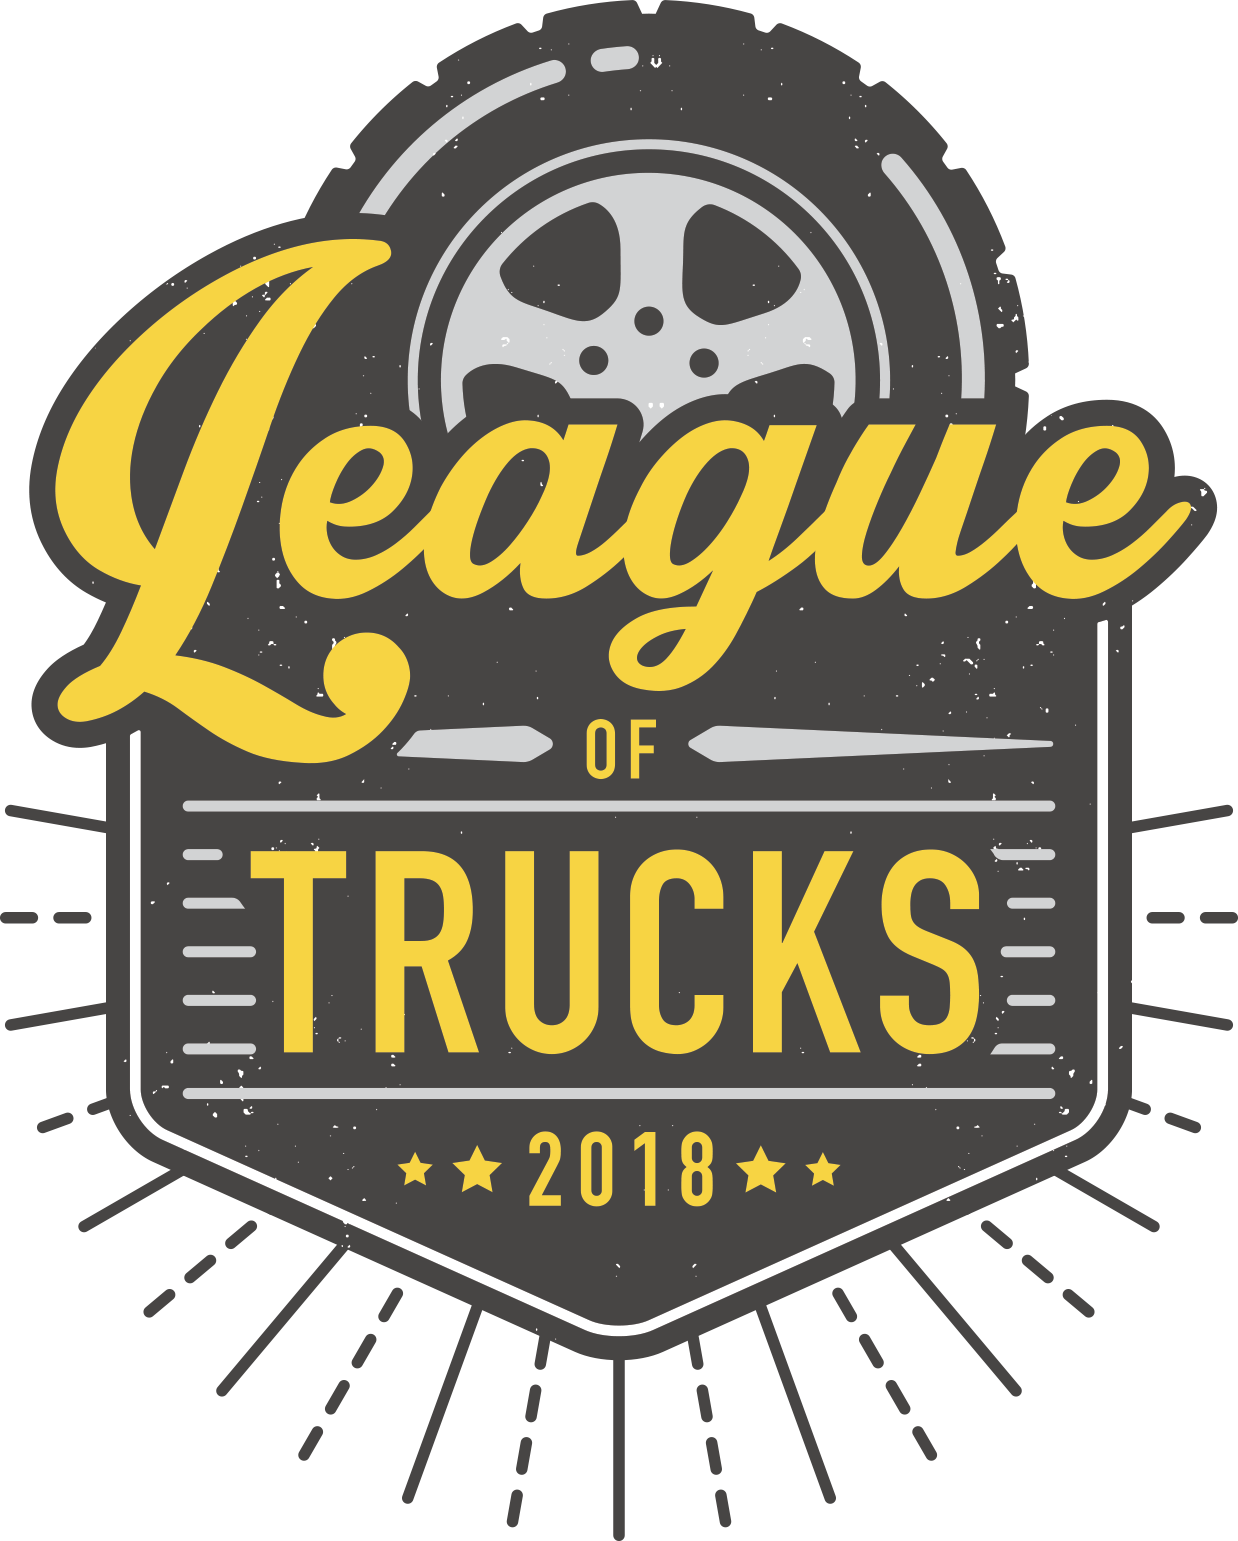 League of Trucks logo